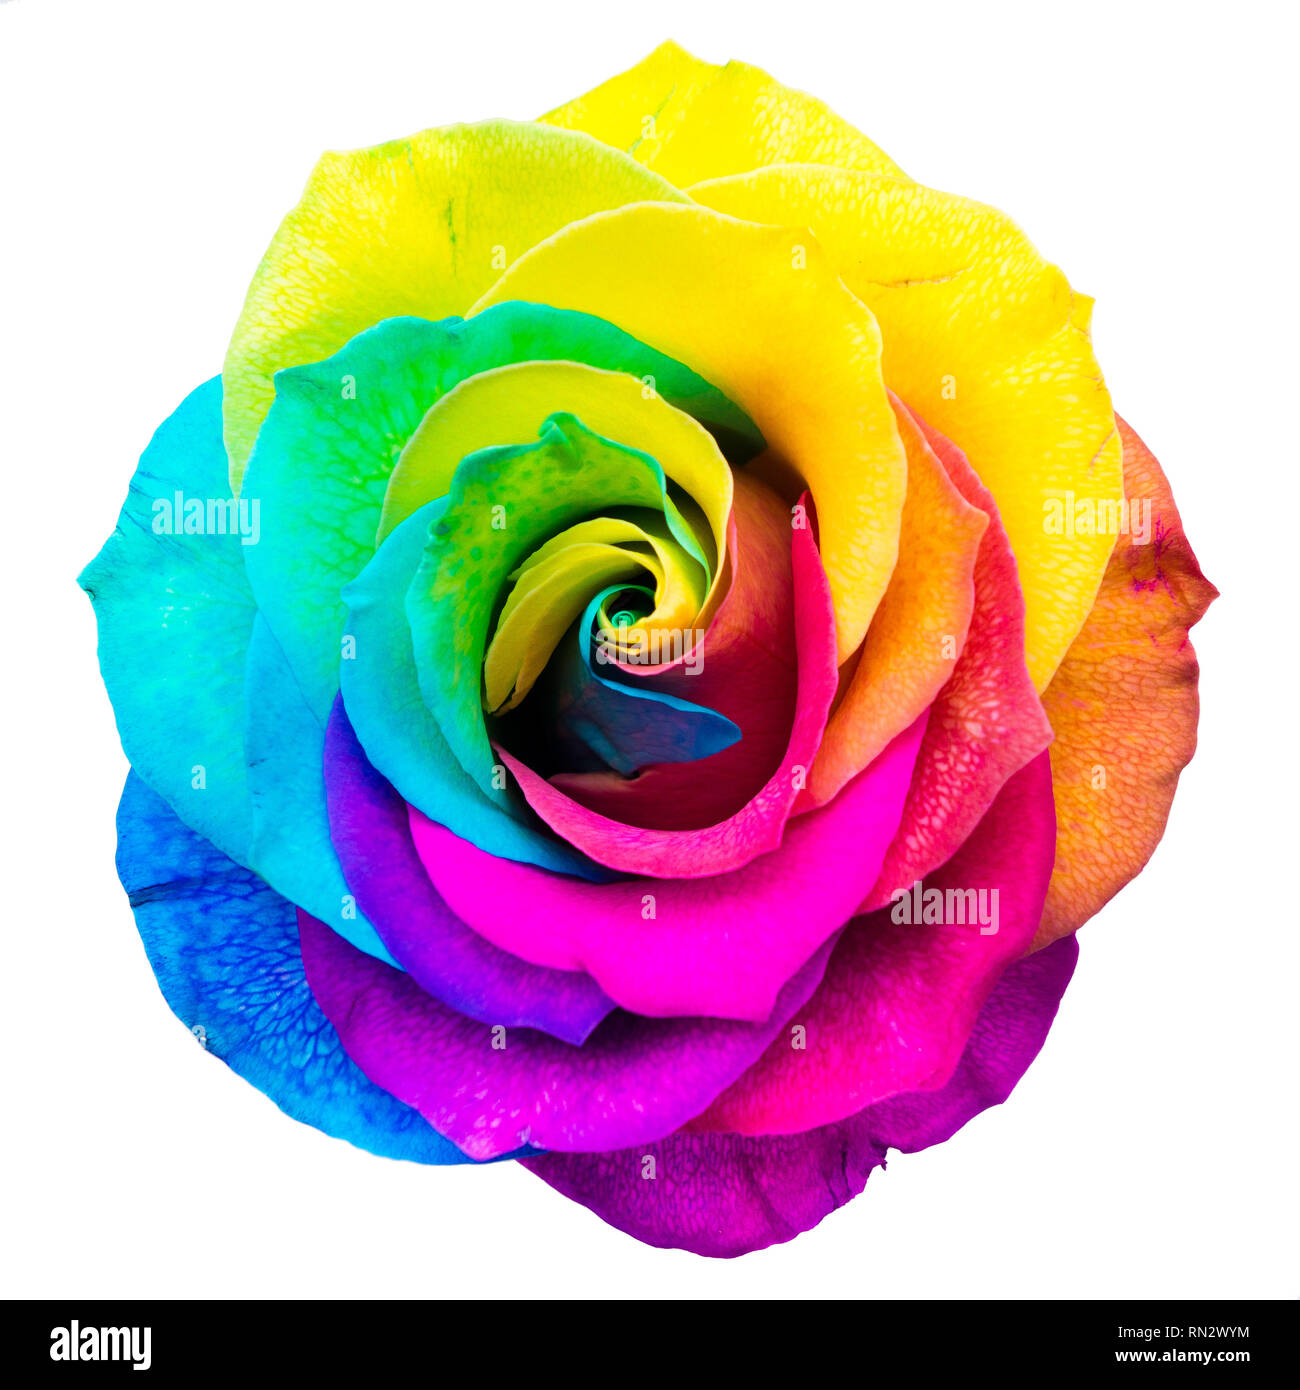 Rosa arcobaleno immagini e fotografie stock ad alta risoluzione - Alamy